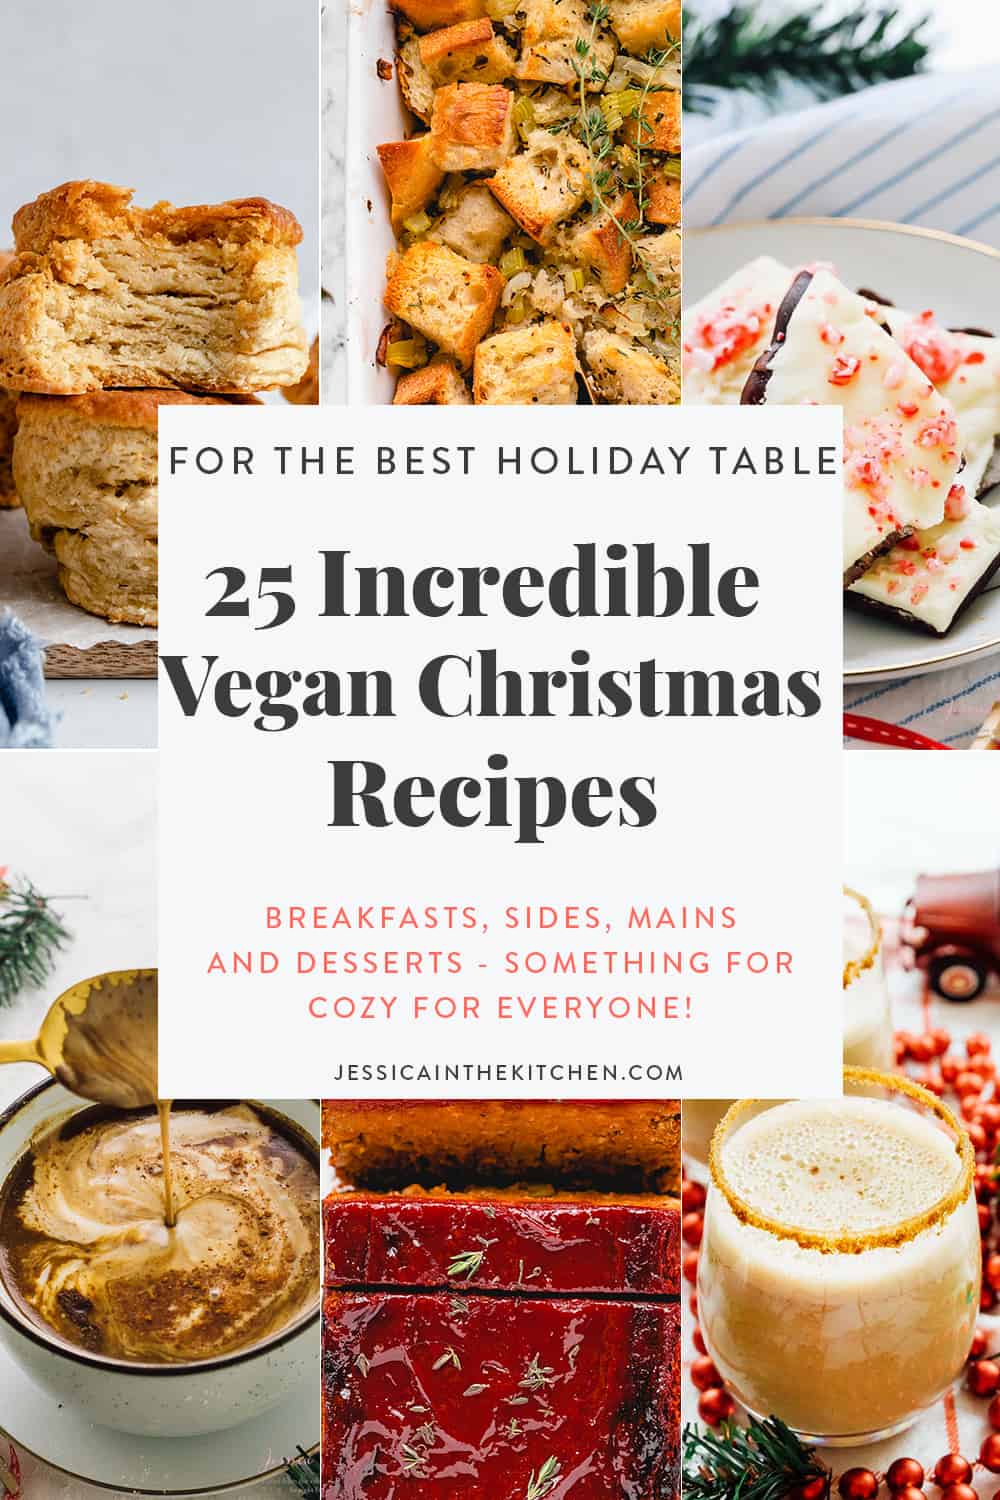 6 images representing Vegan Christmas Recipes